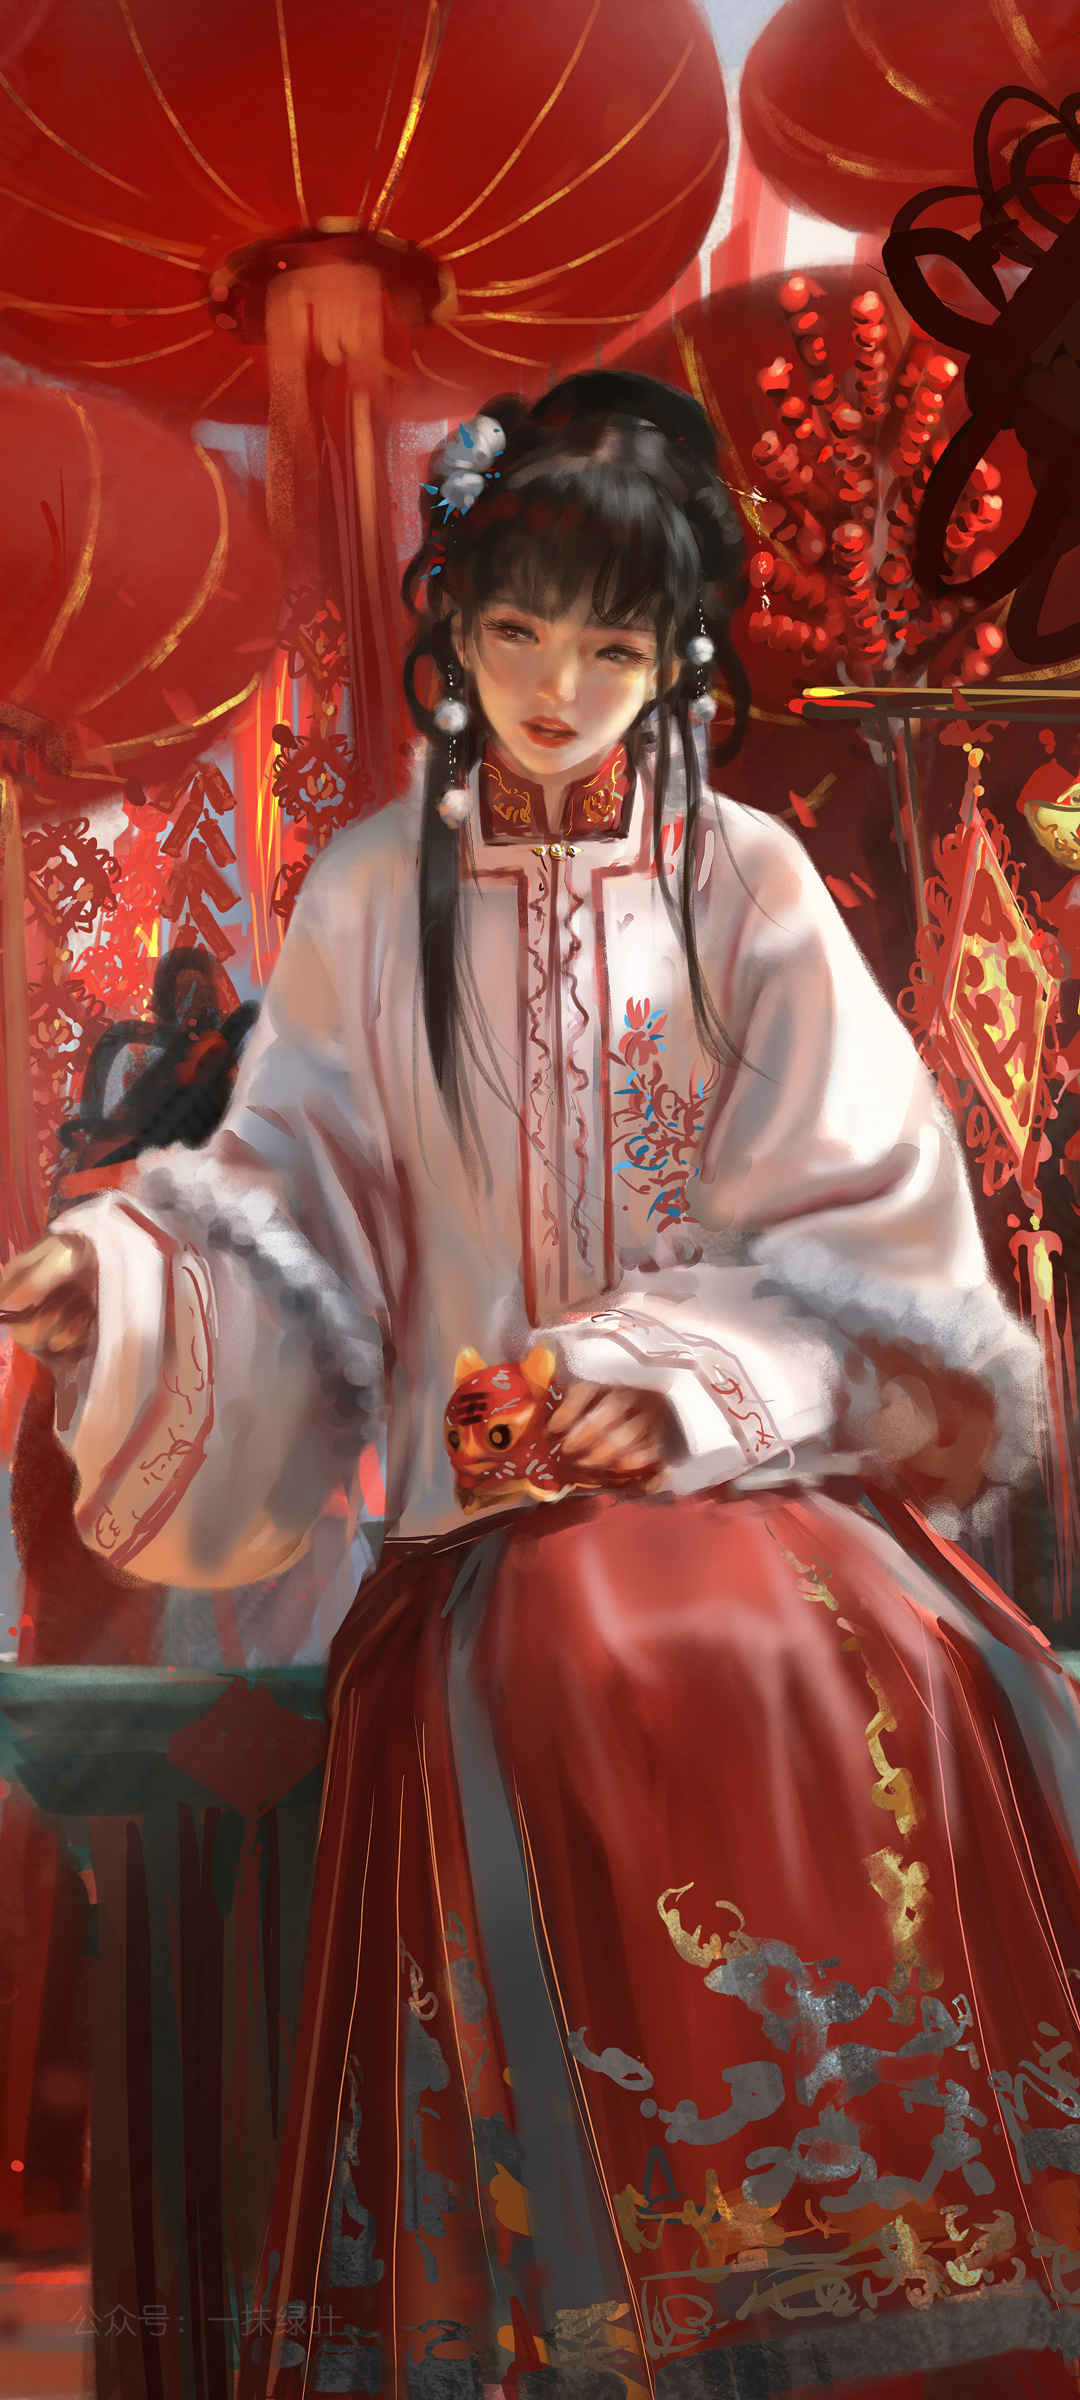 农历新年 春节 女孩 古装红色裙子 鬼刀高清全屏手机壁纸